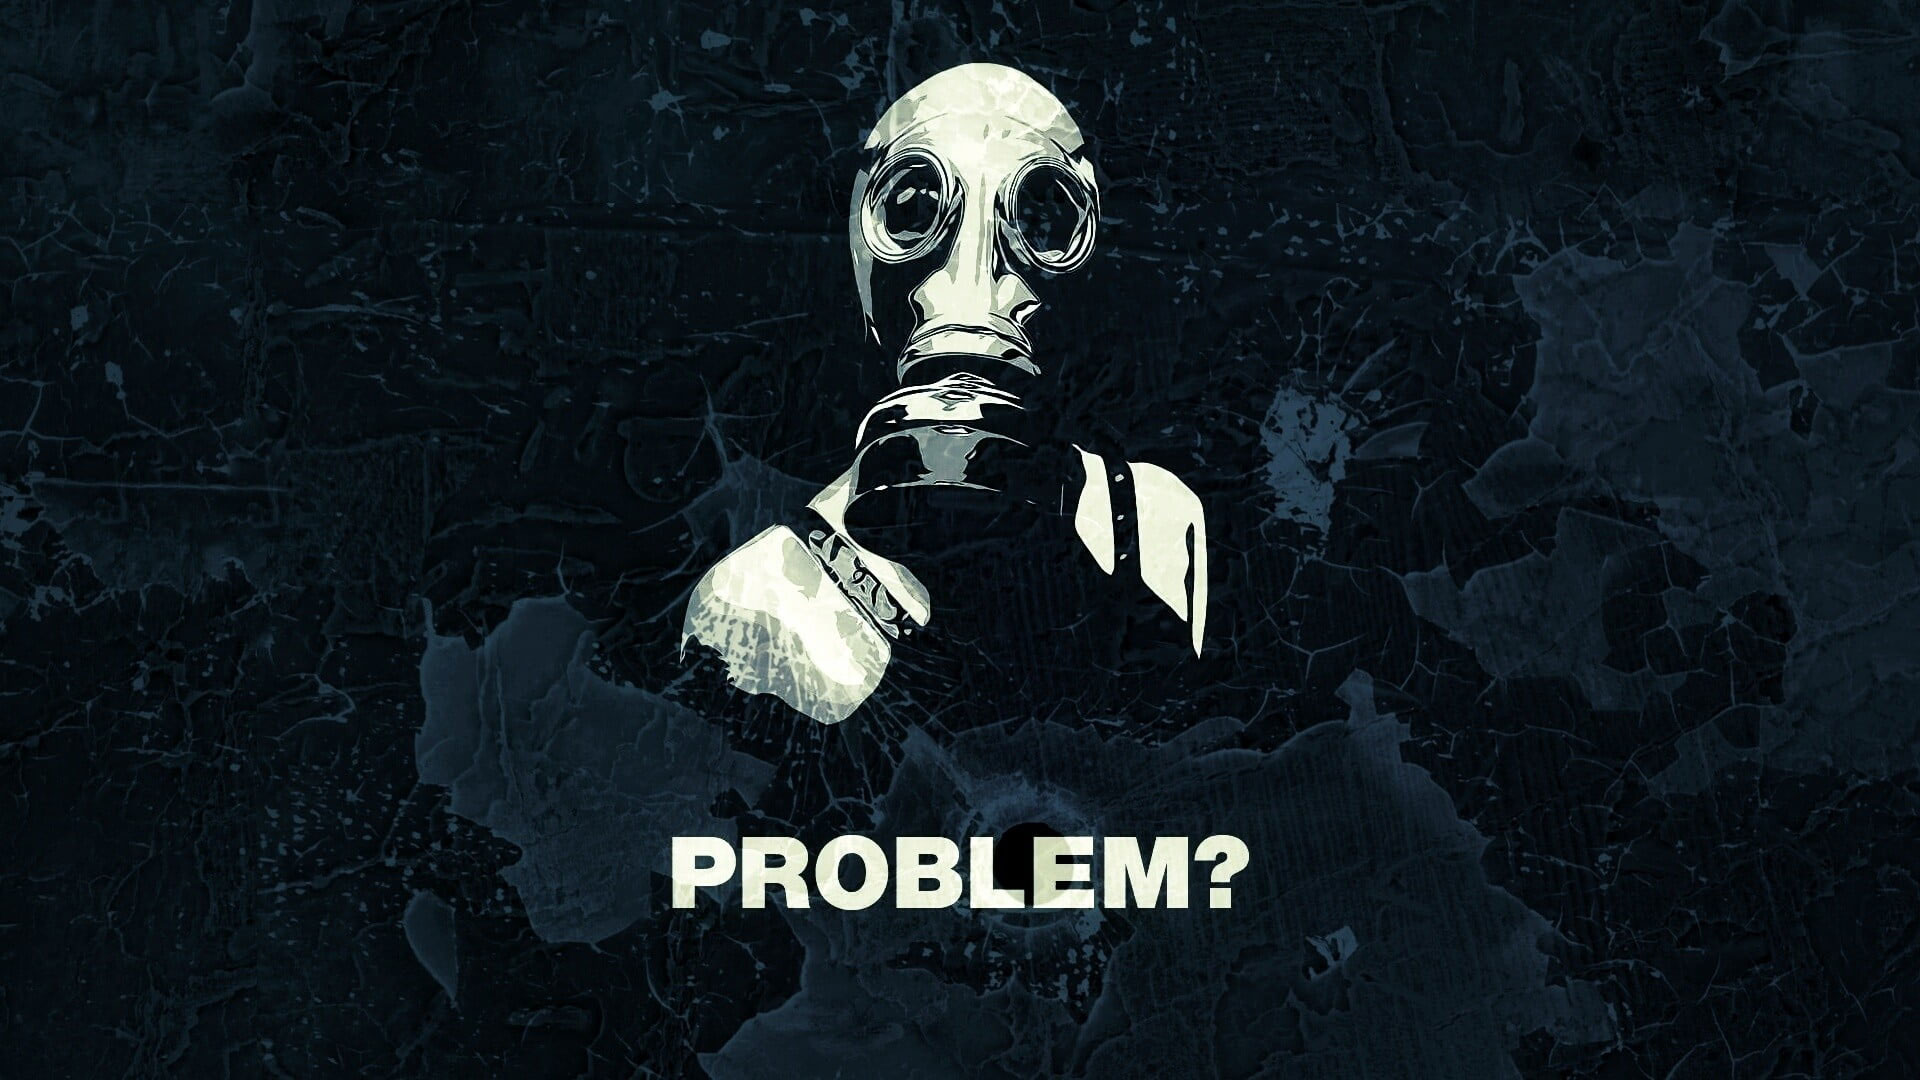 Quote gas masks wallpaper, human skeleton